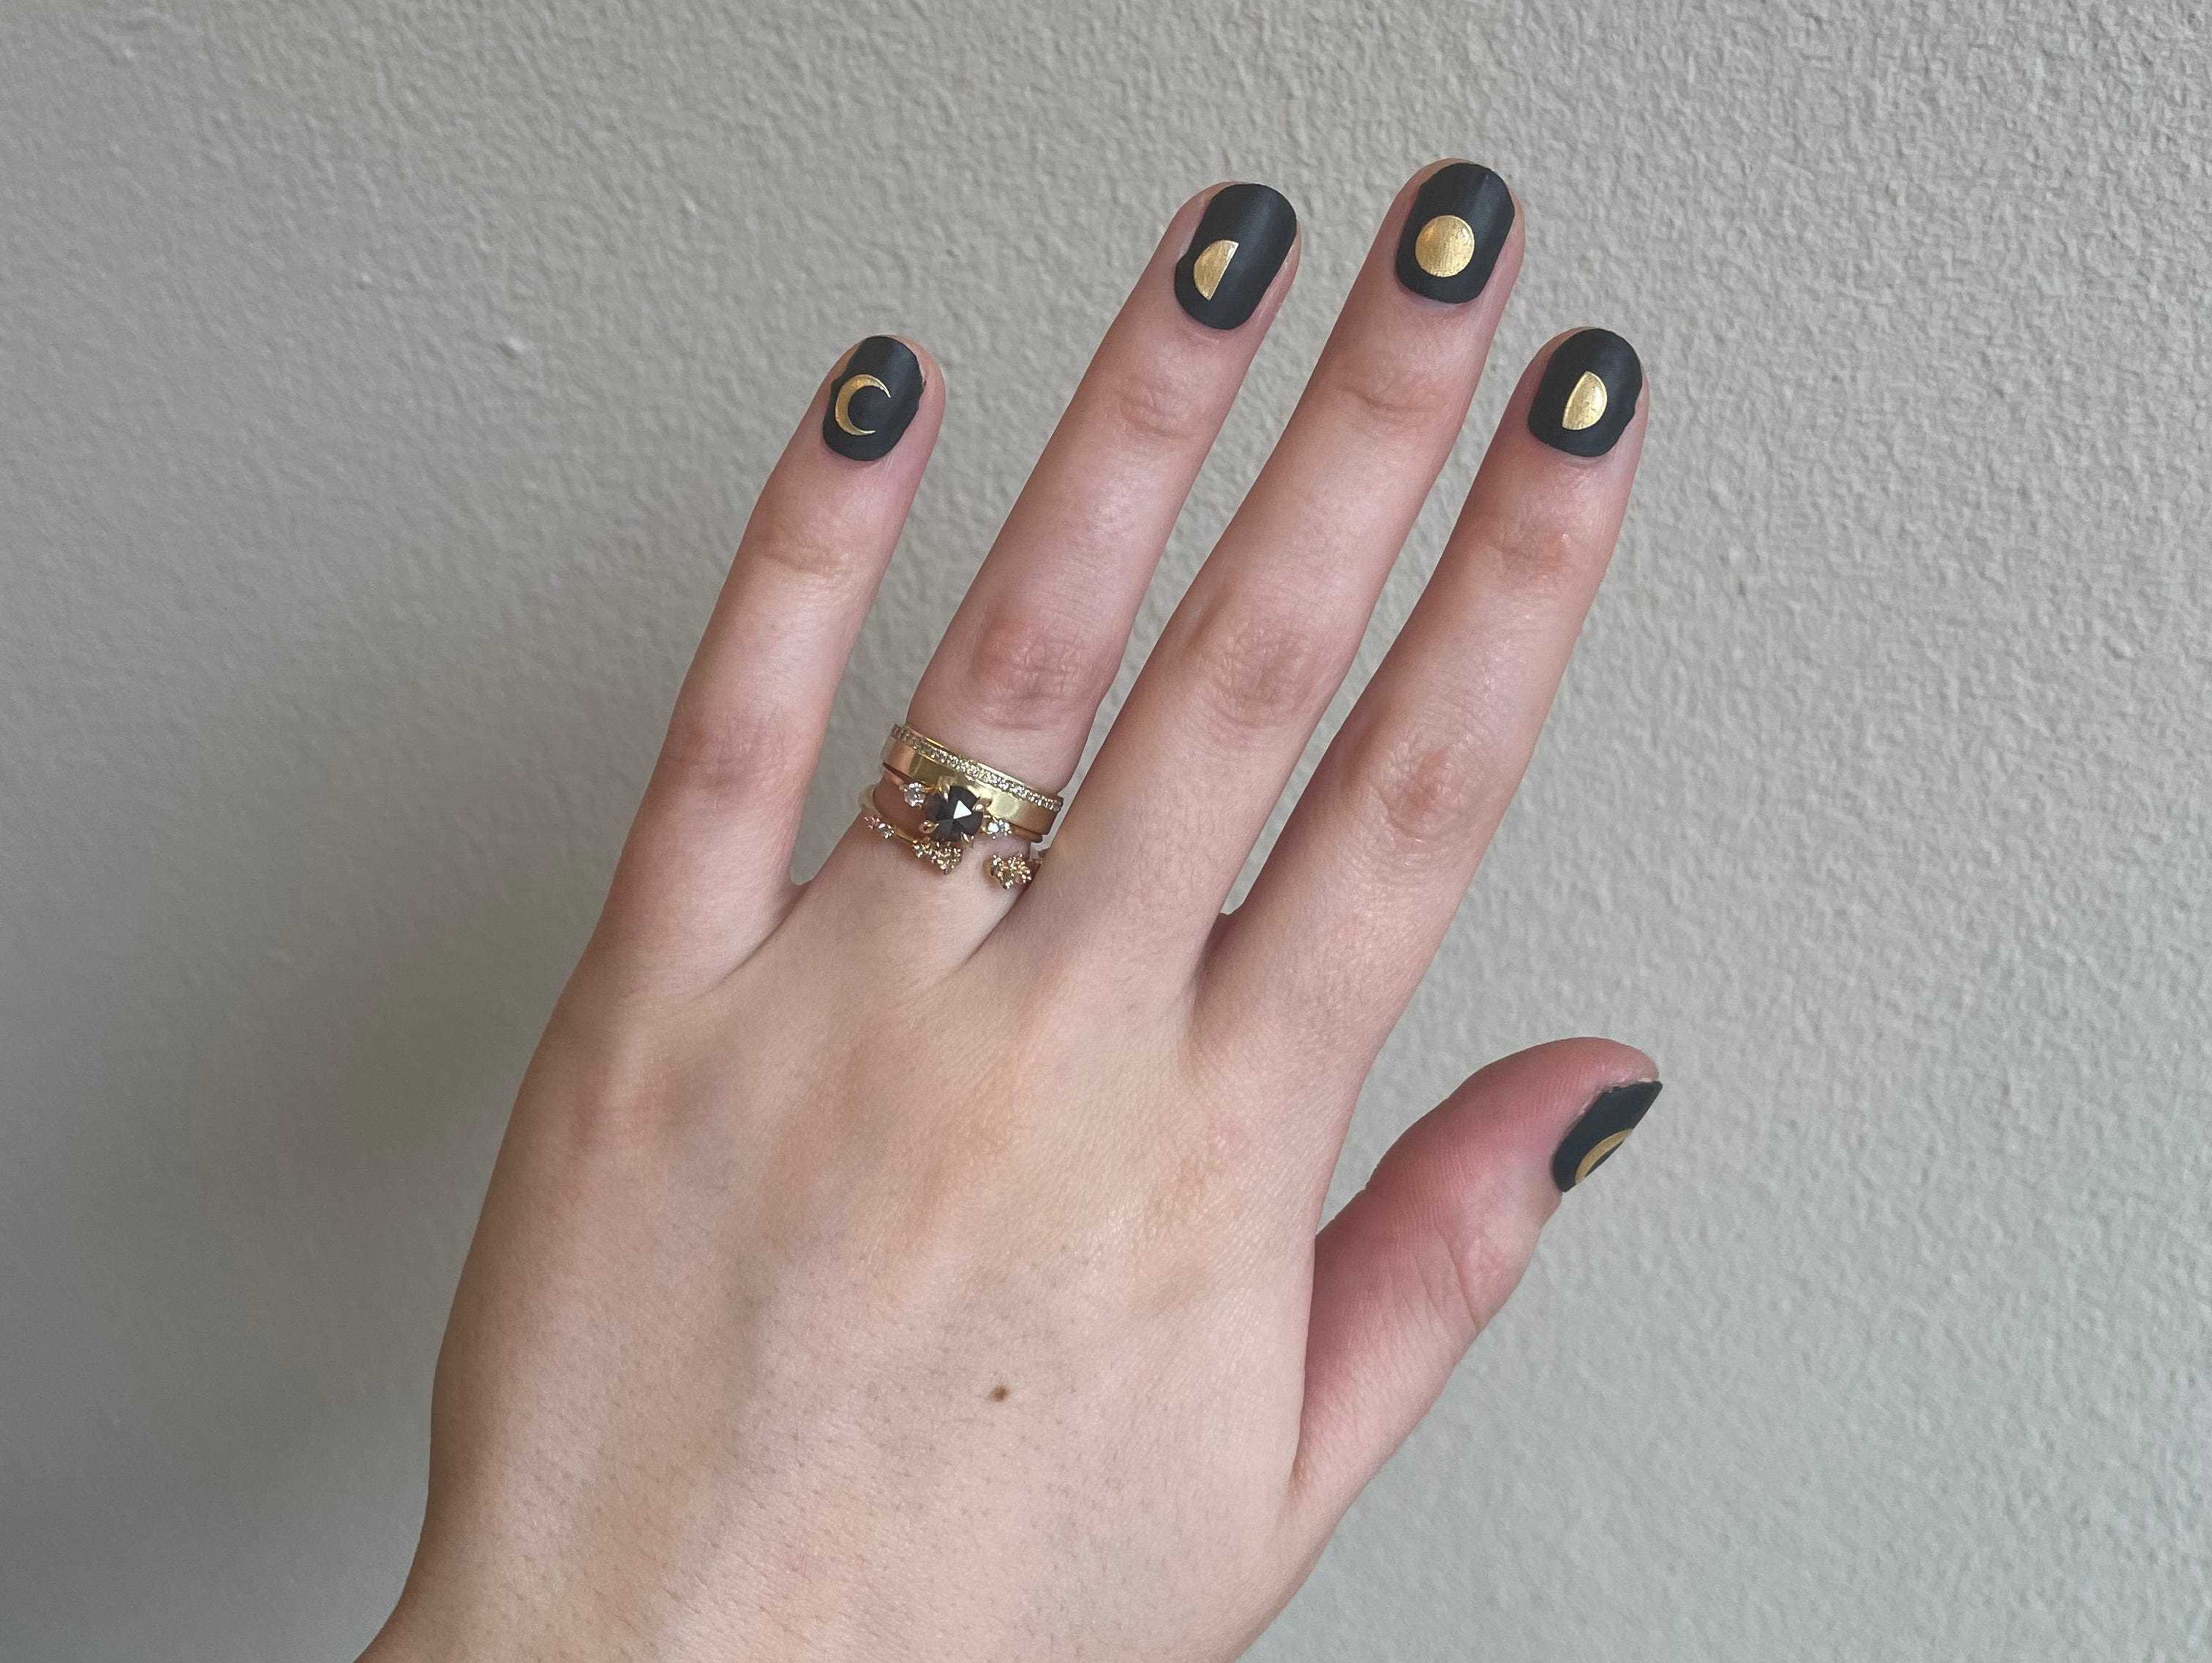 Schwarz-goldene Nagelsticker eines Handmodells von ManiMe, die Mondphasen darstellen.